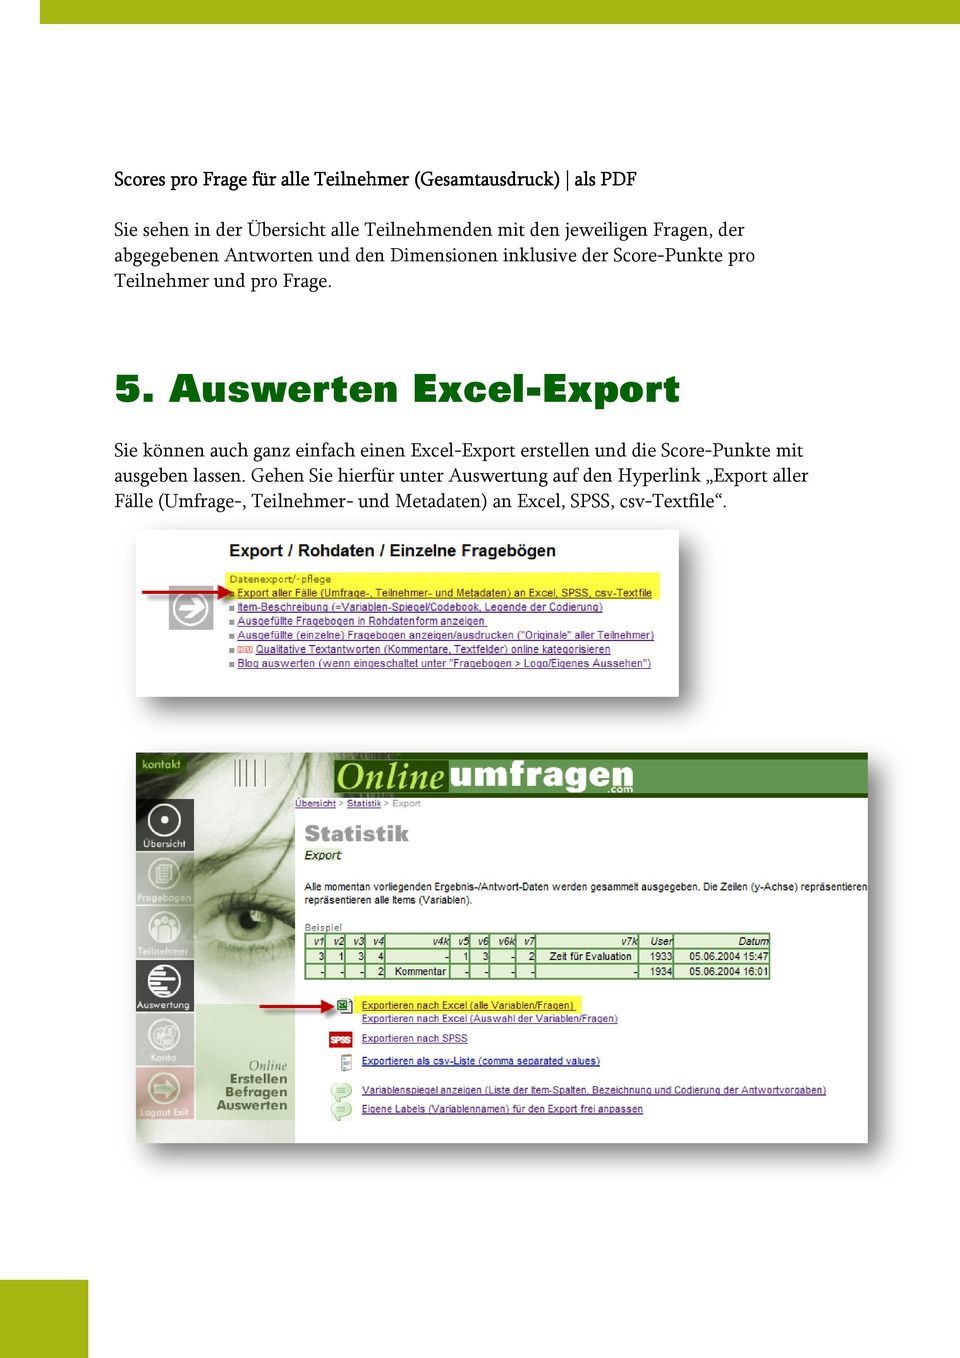 Auswerten Excel-Export Sie können auch ganz einfach einen Excel-Export erstellen und die Score-Punkte mit ausgeben lassen.